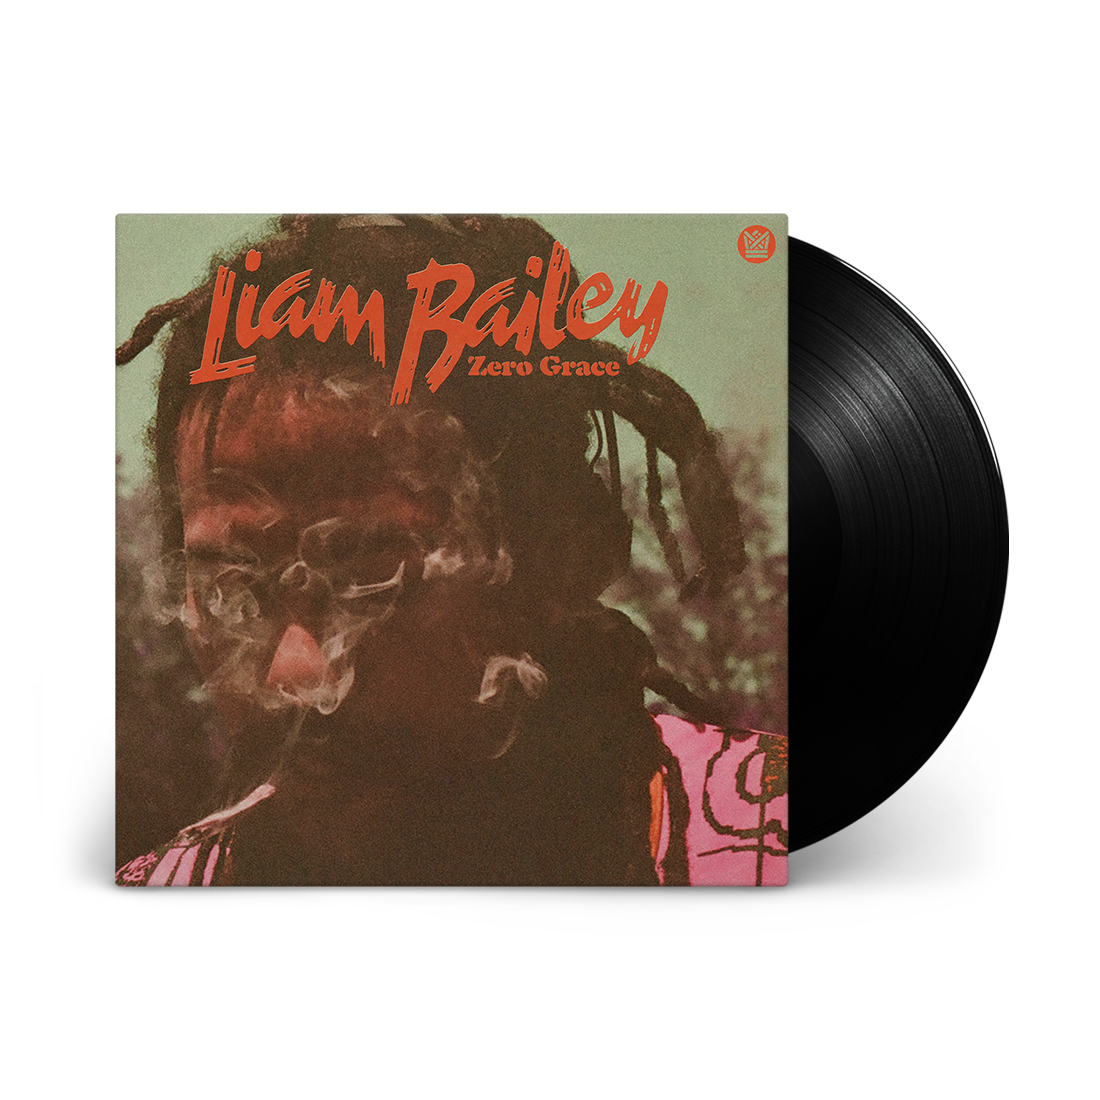 Liam Bailey - Zero Grace: Vinyl LP